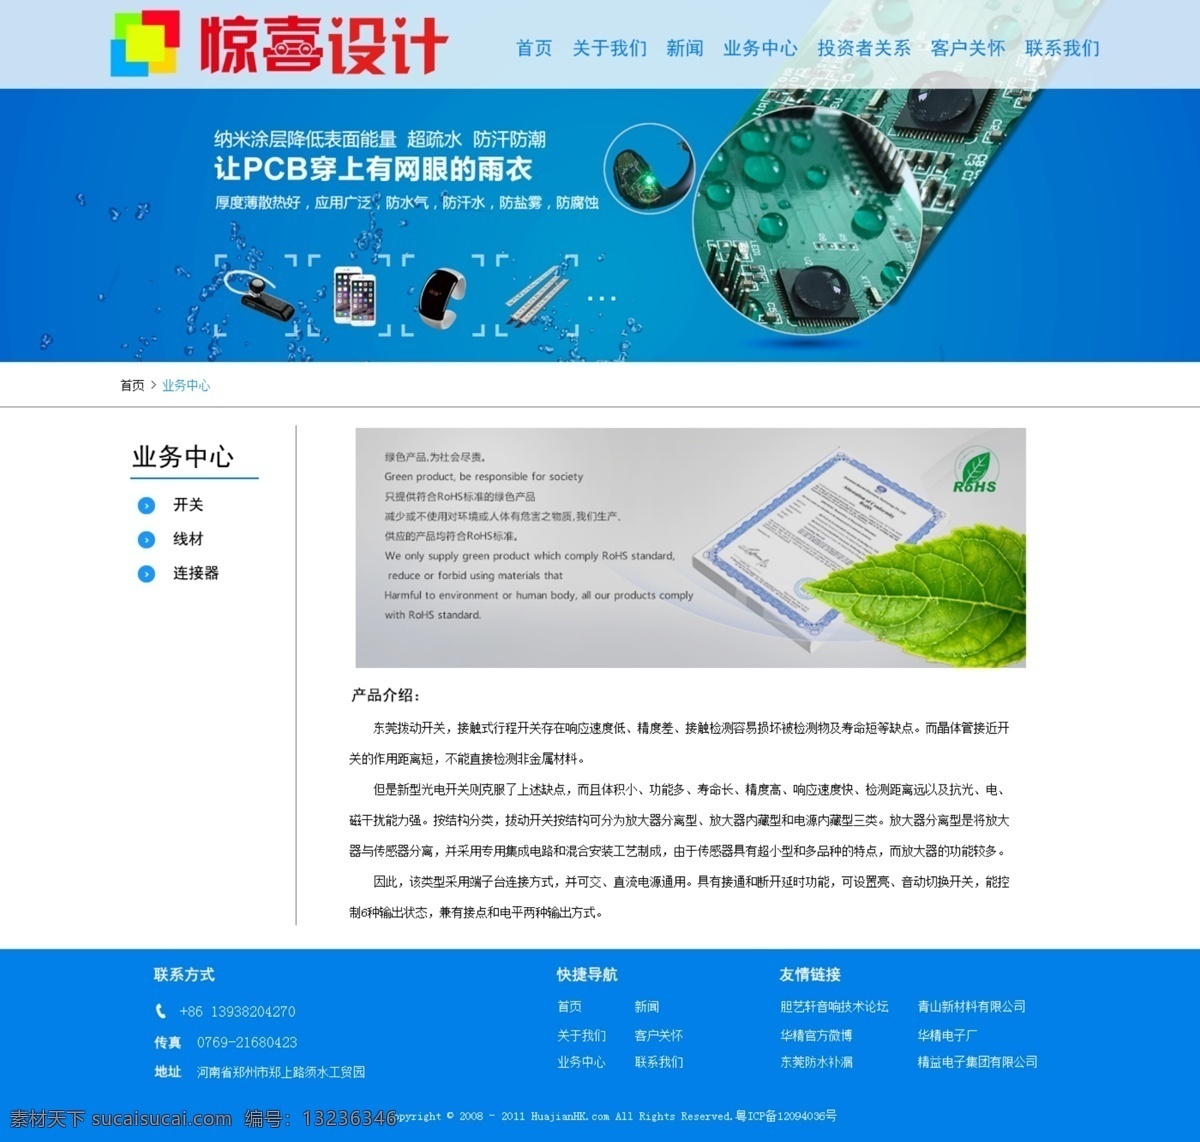 蓝色 电子元件 产品 二级 页面 网站 企业网站 大方网站模板 电子元件企业 电子元件研发